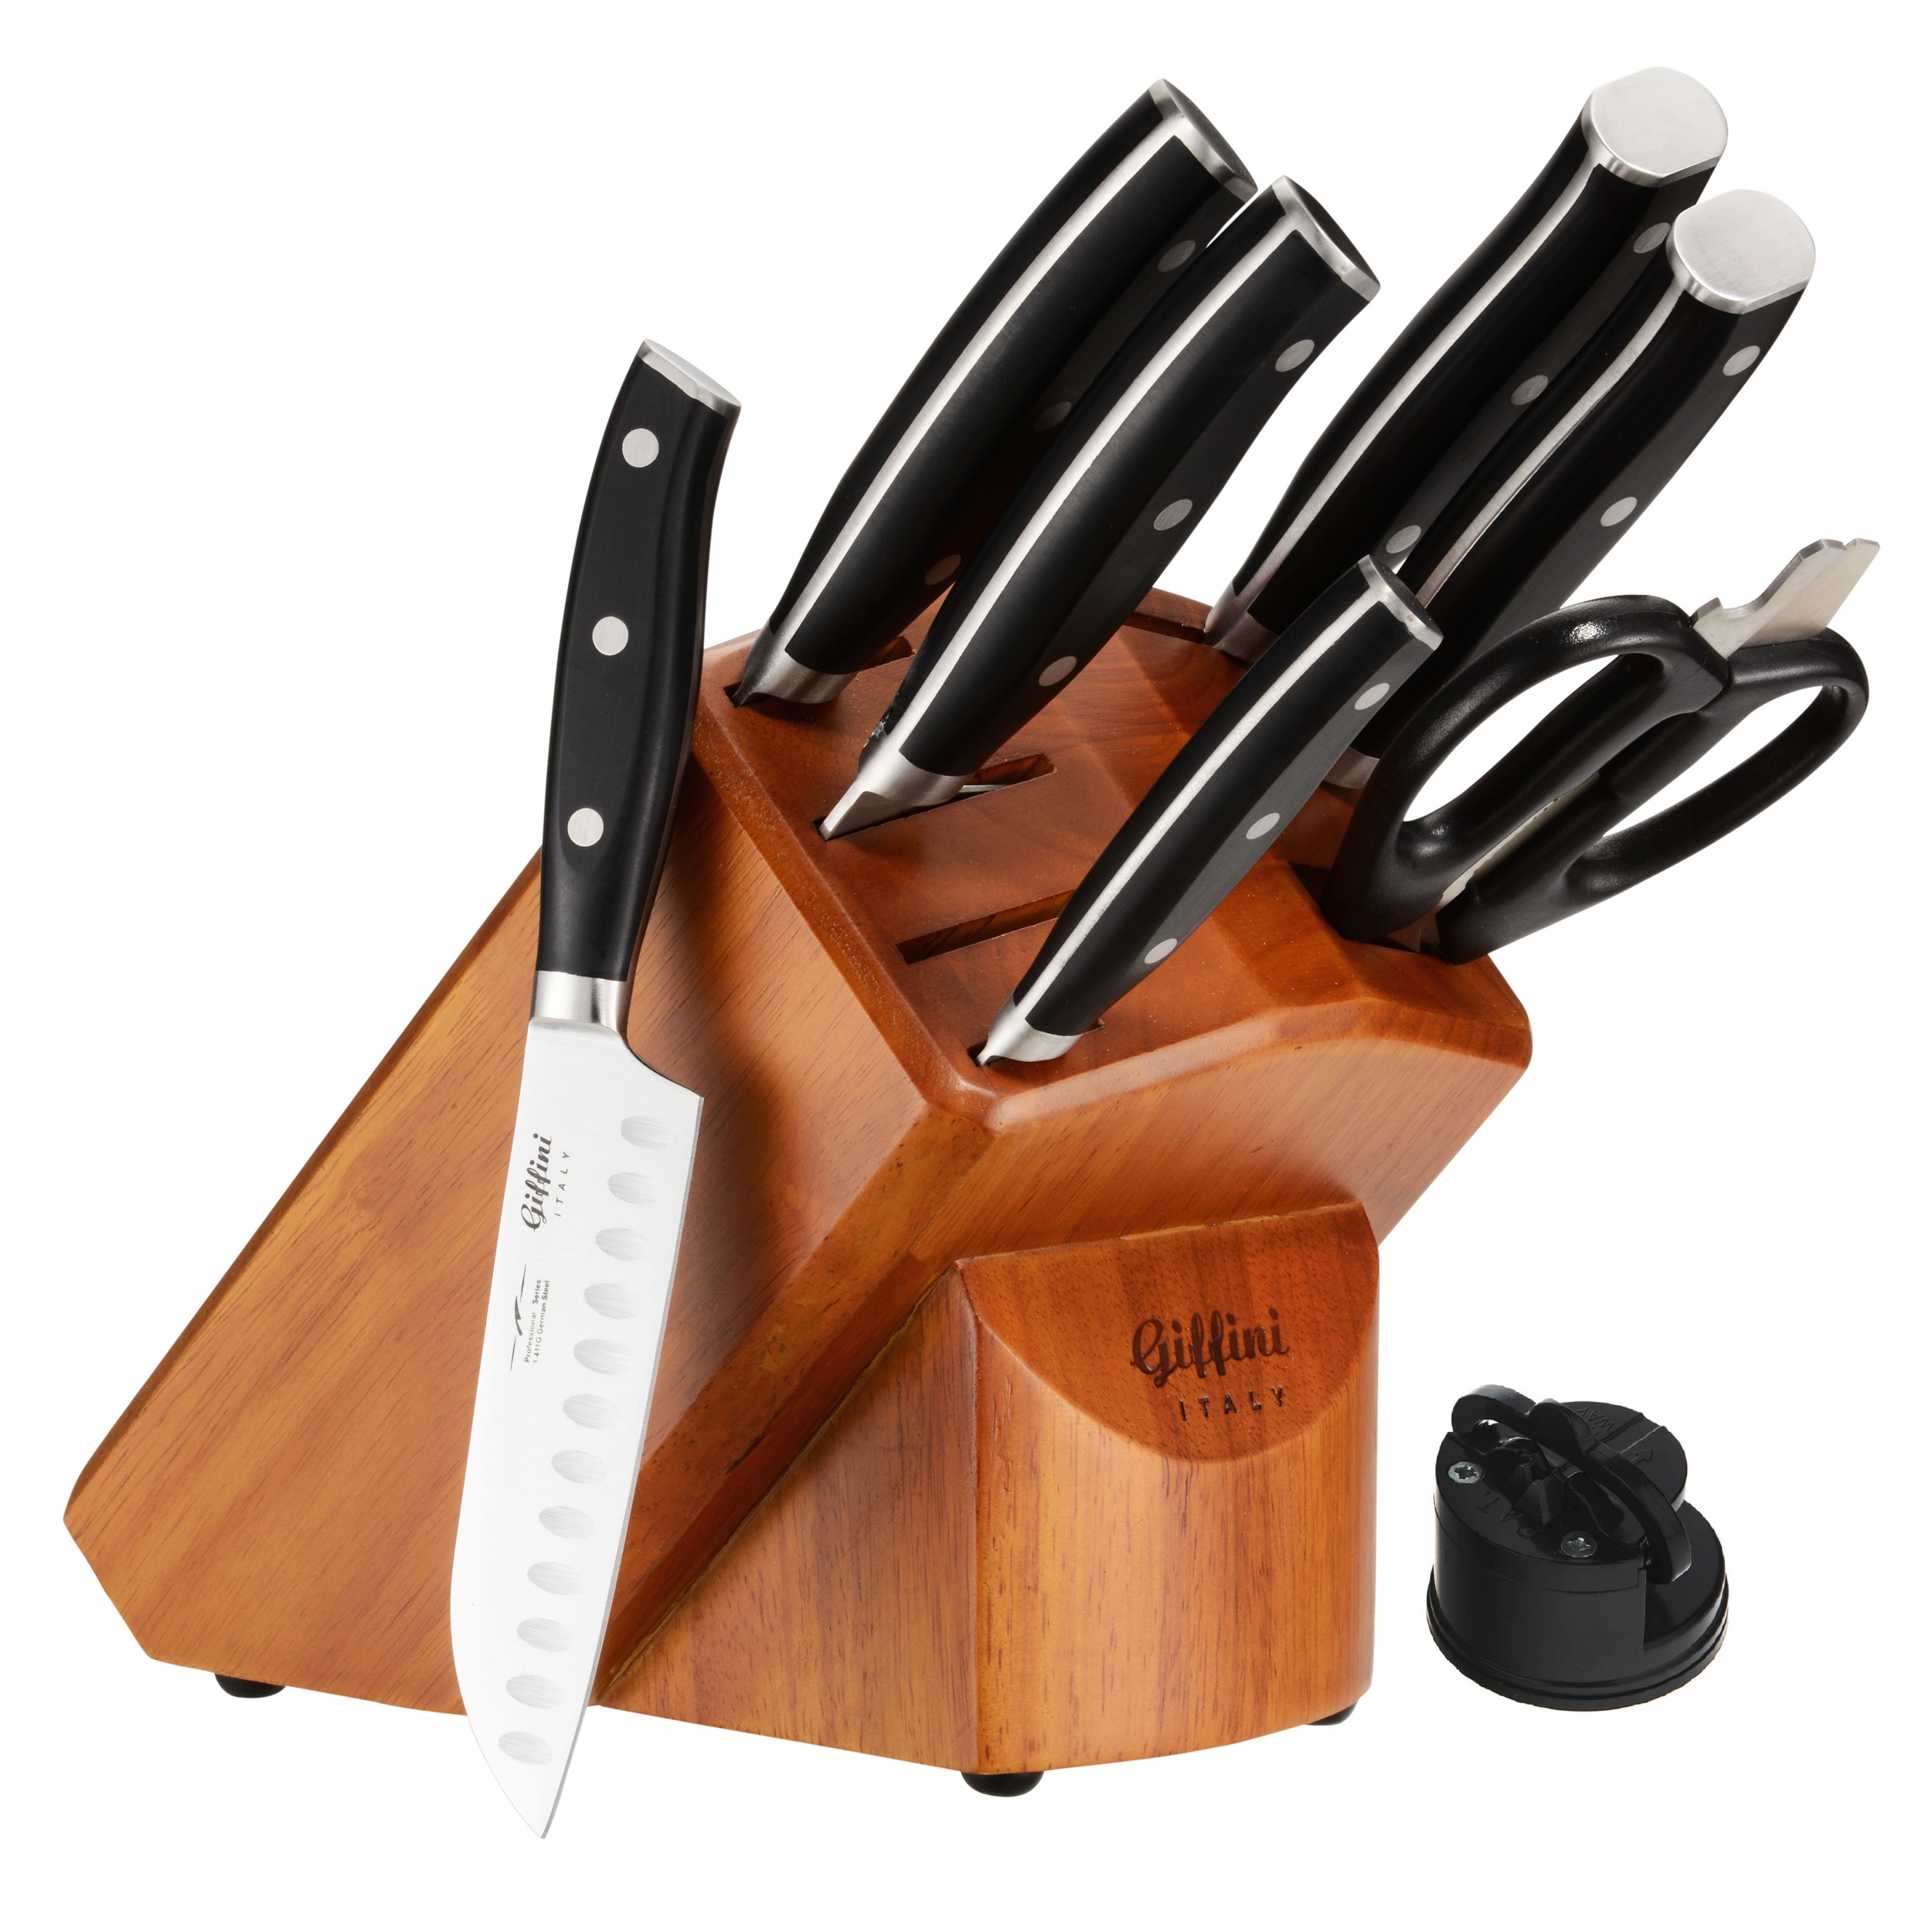 نکته خرید - قیمت روز سرویس چاقو آشپزخانه 9 پارچه جی فی نی کد 2301-PLUS خرید